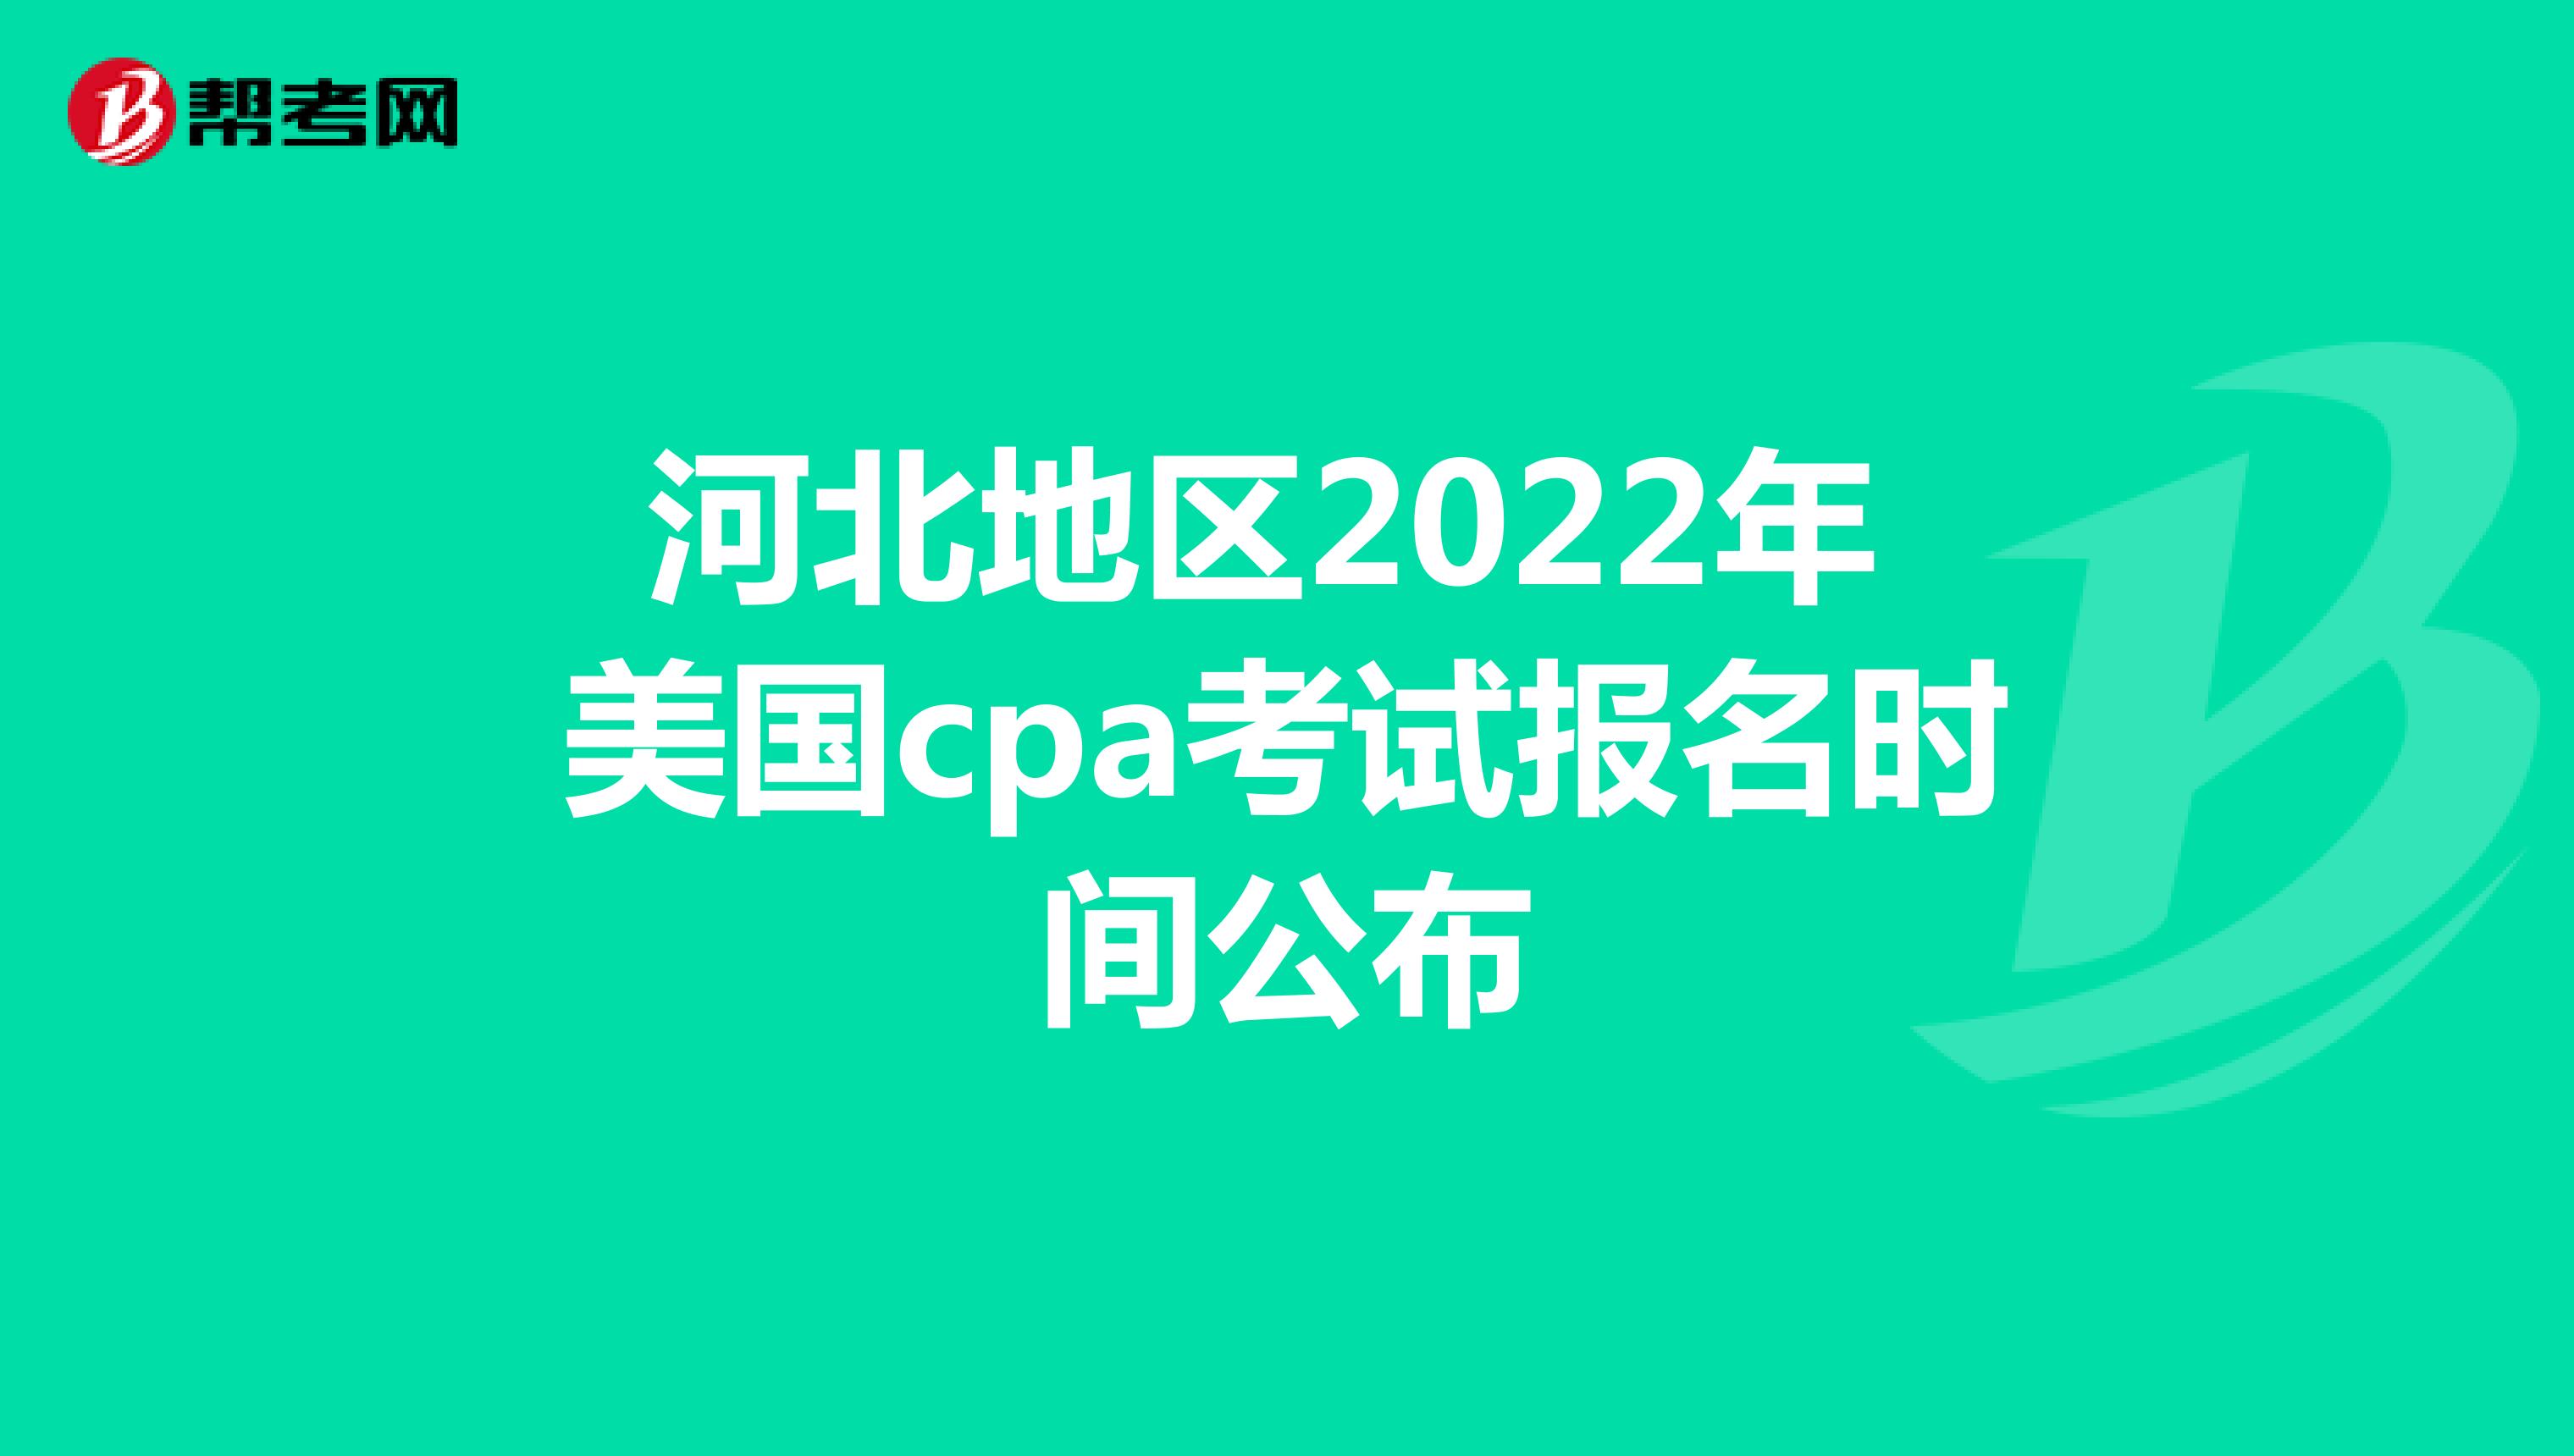 河北地区2022年美国cpa考试报名时间公布